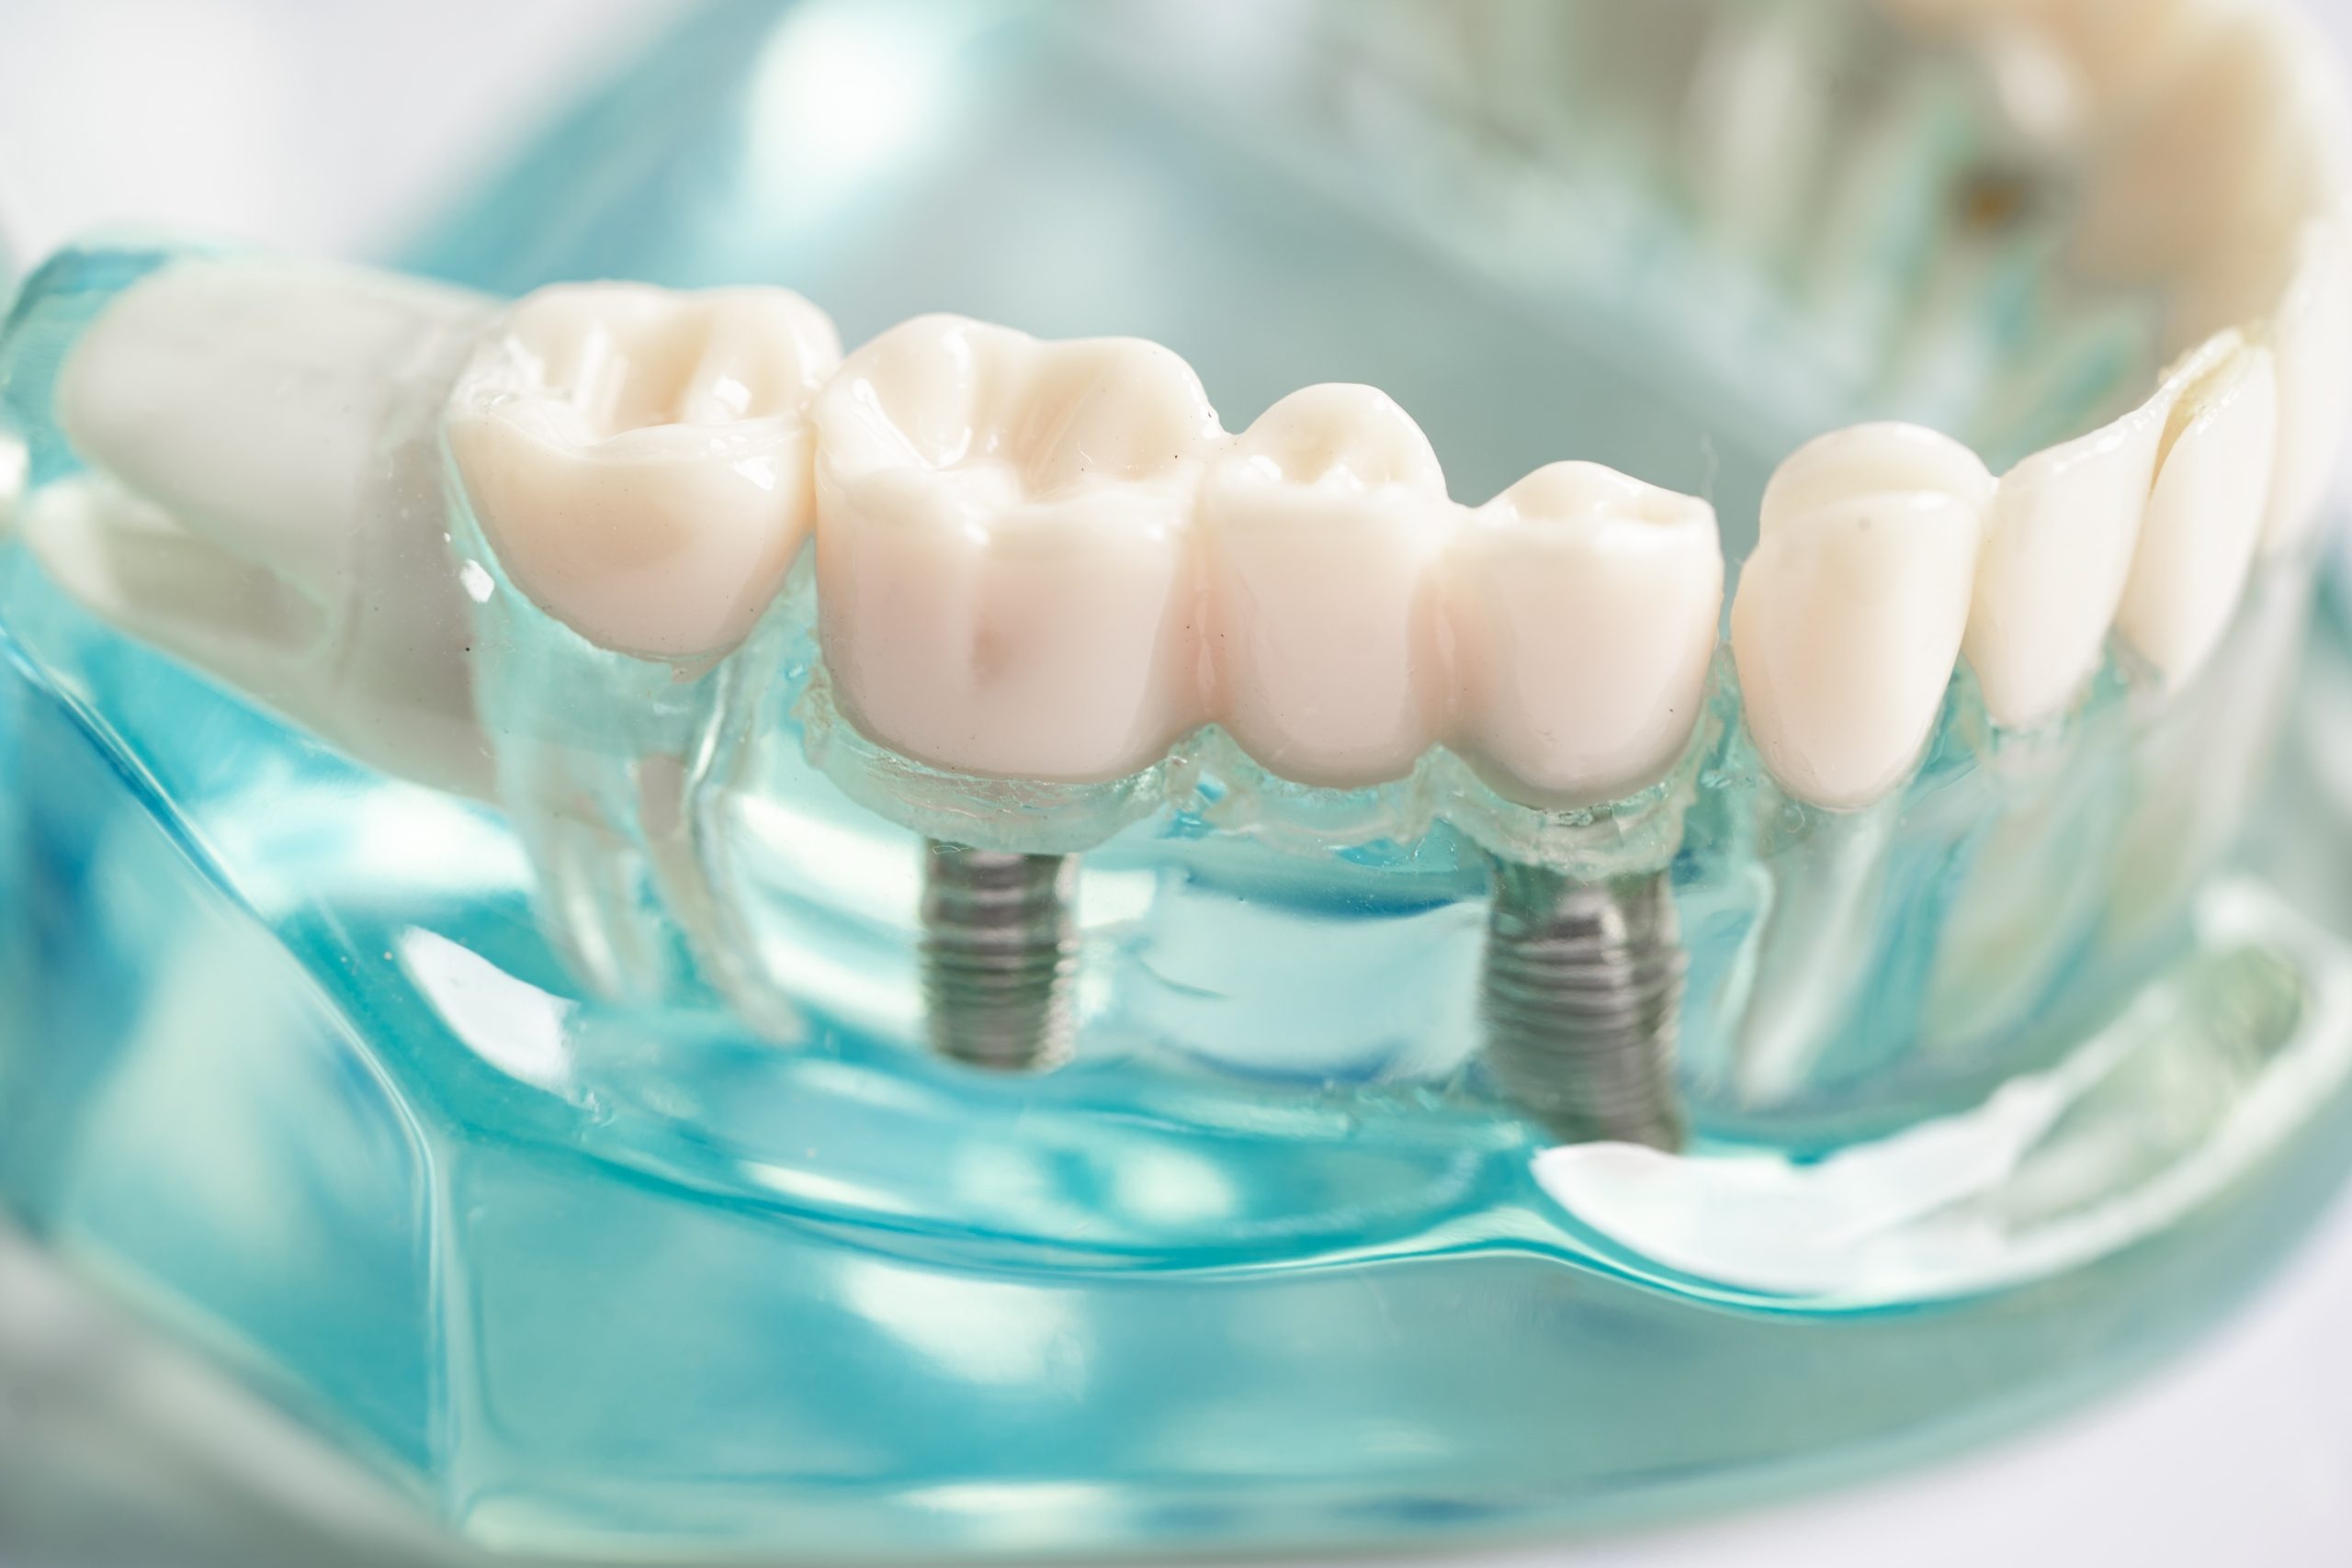 Implant dentaire titane: les avantages